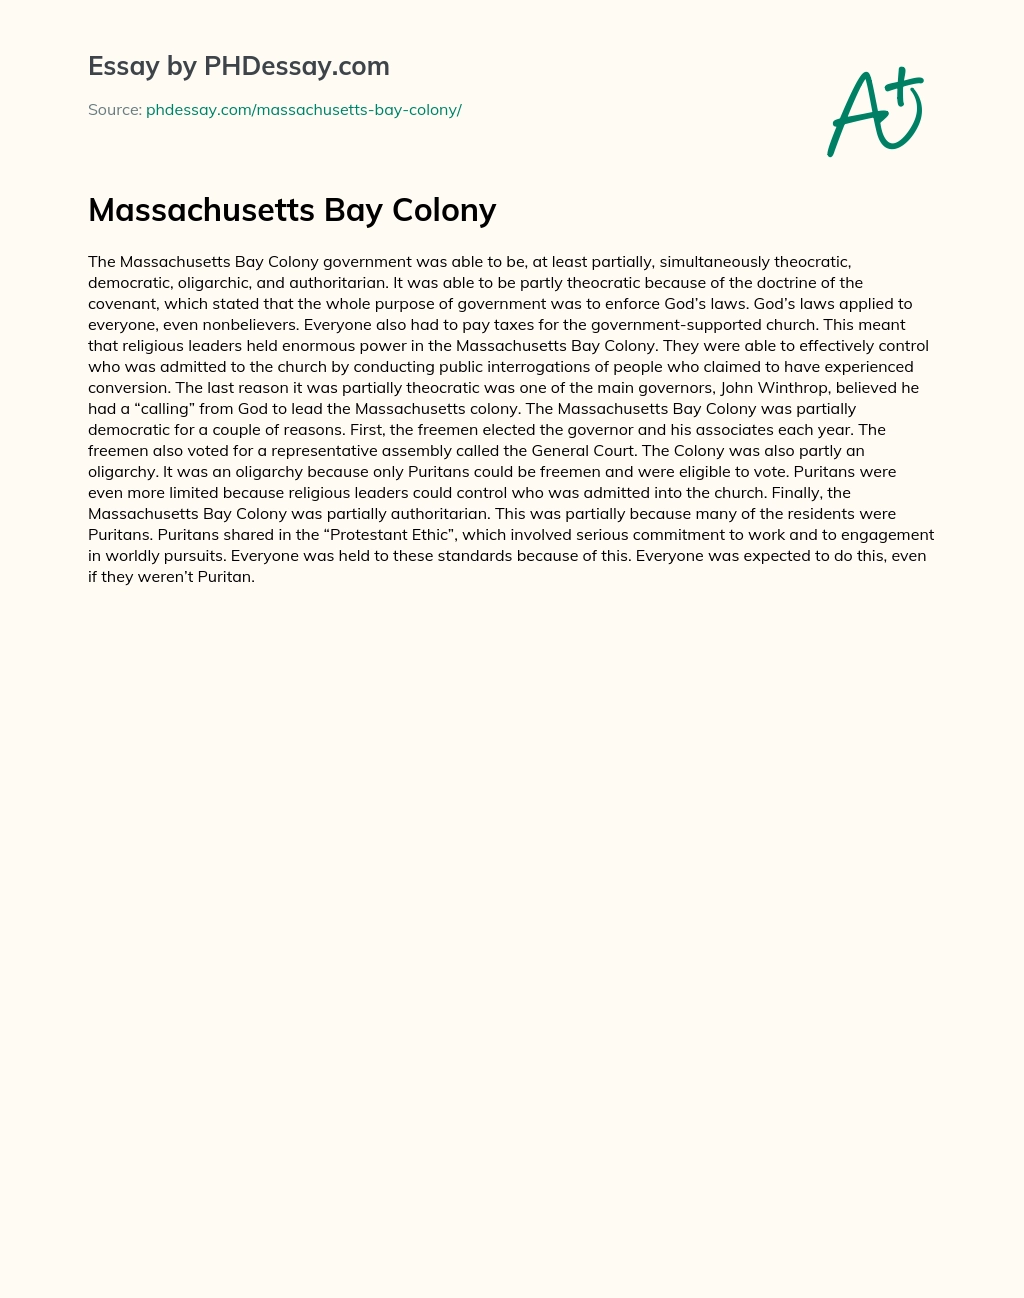 Massachusetts Bay Colony essay